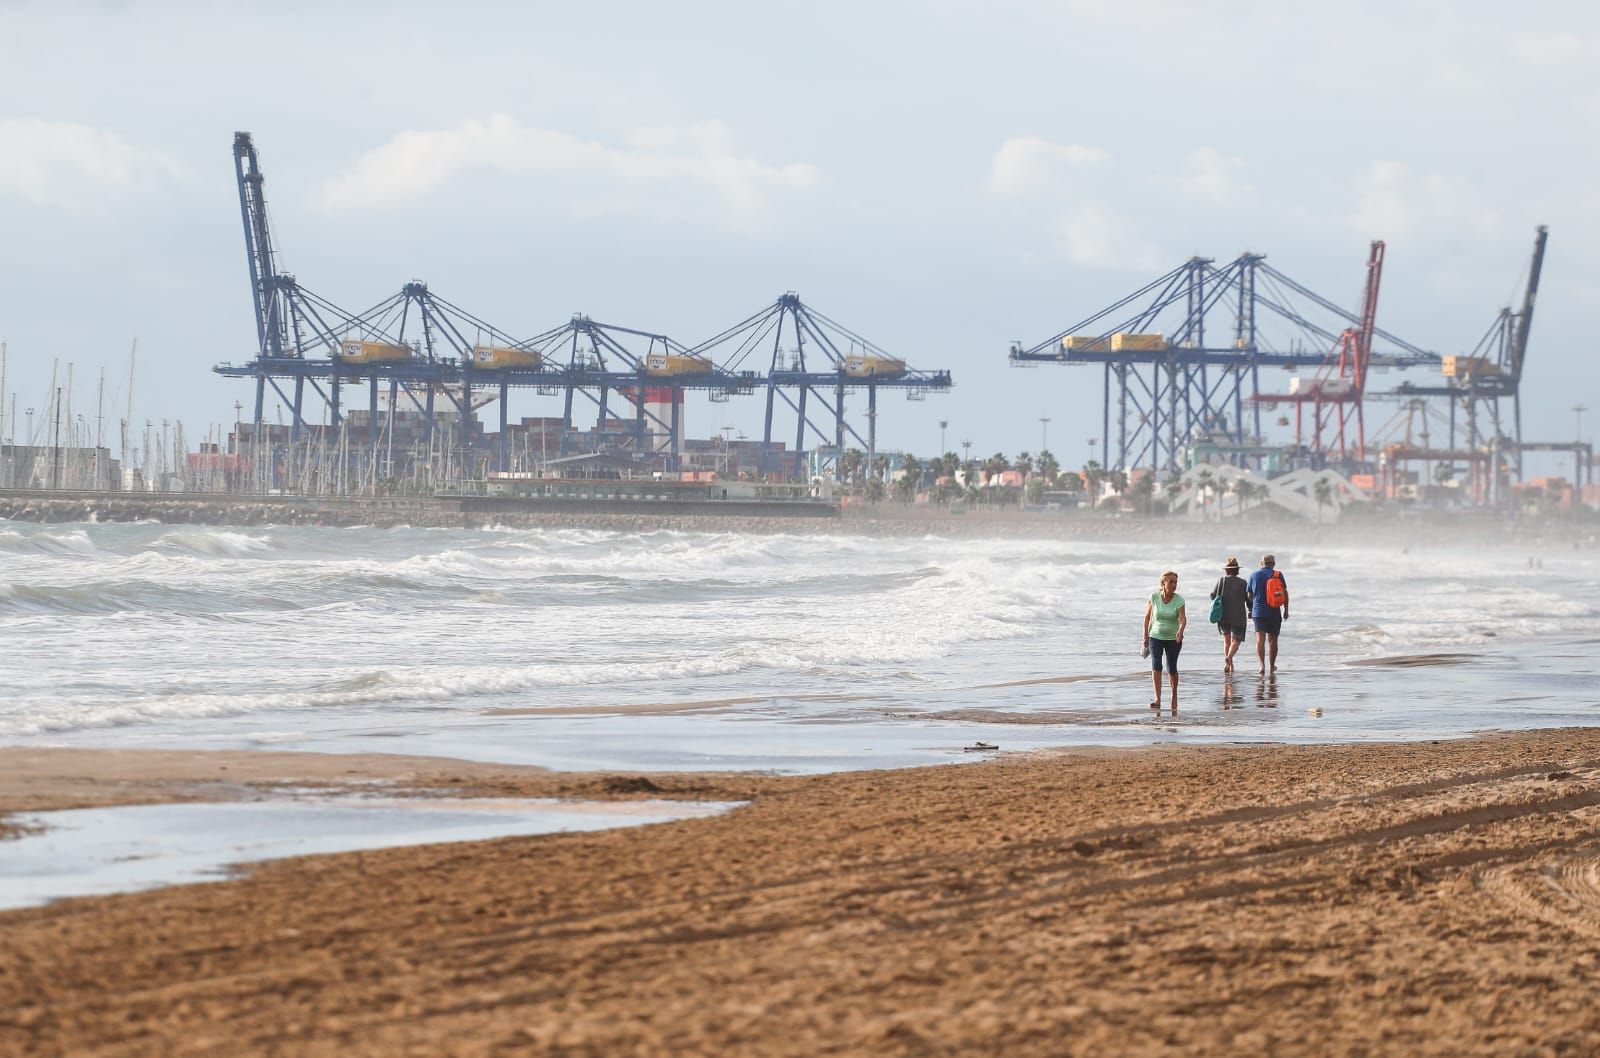 La alerta amarilla en València provoca temporal marítimo